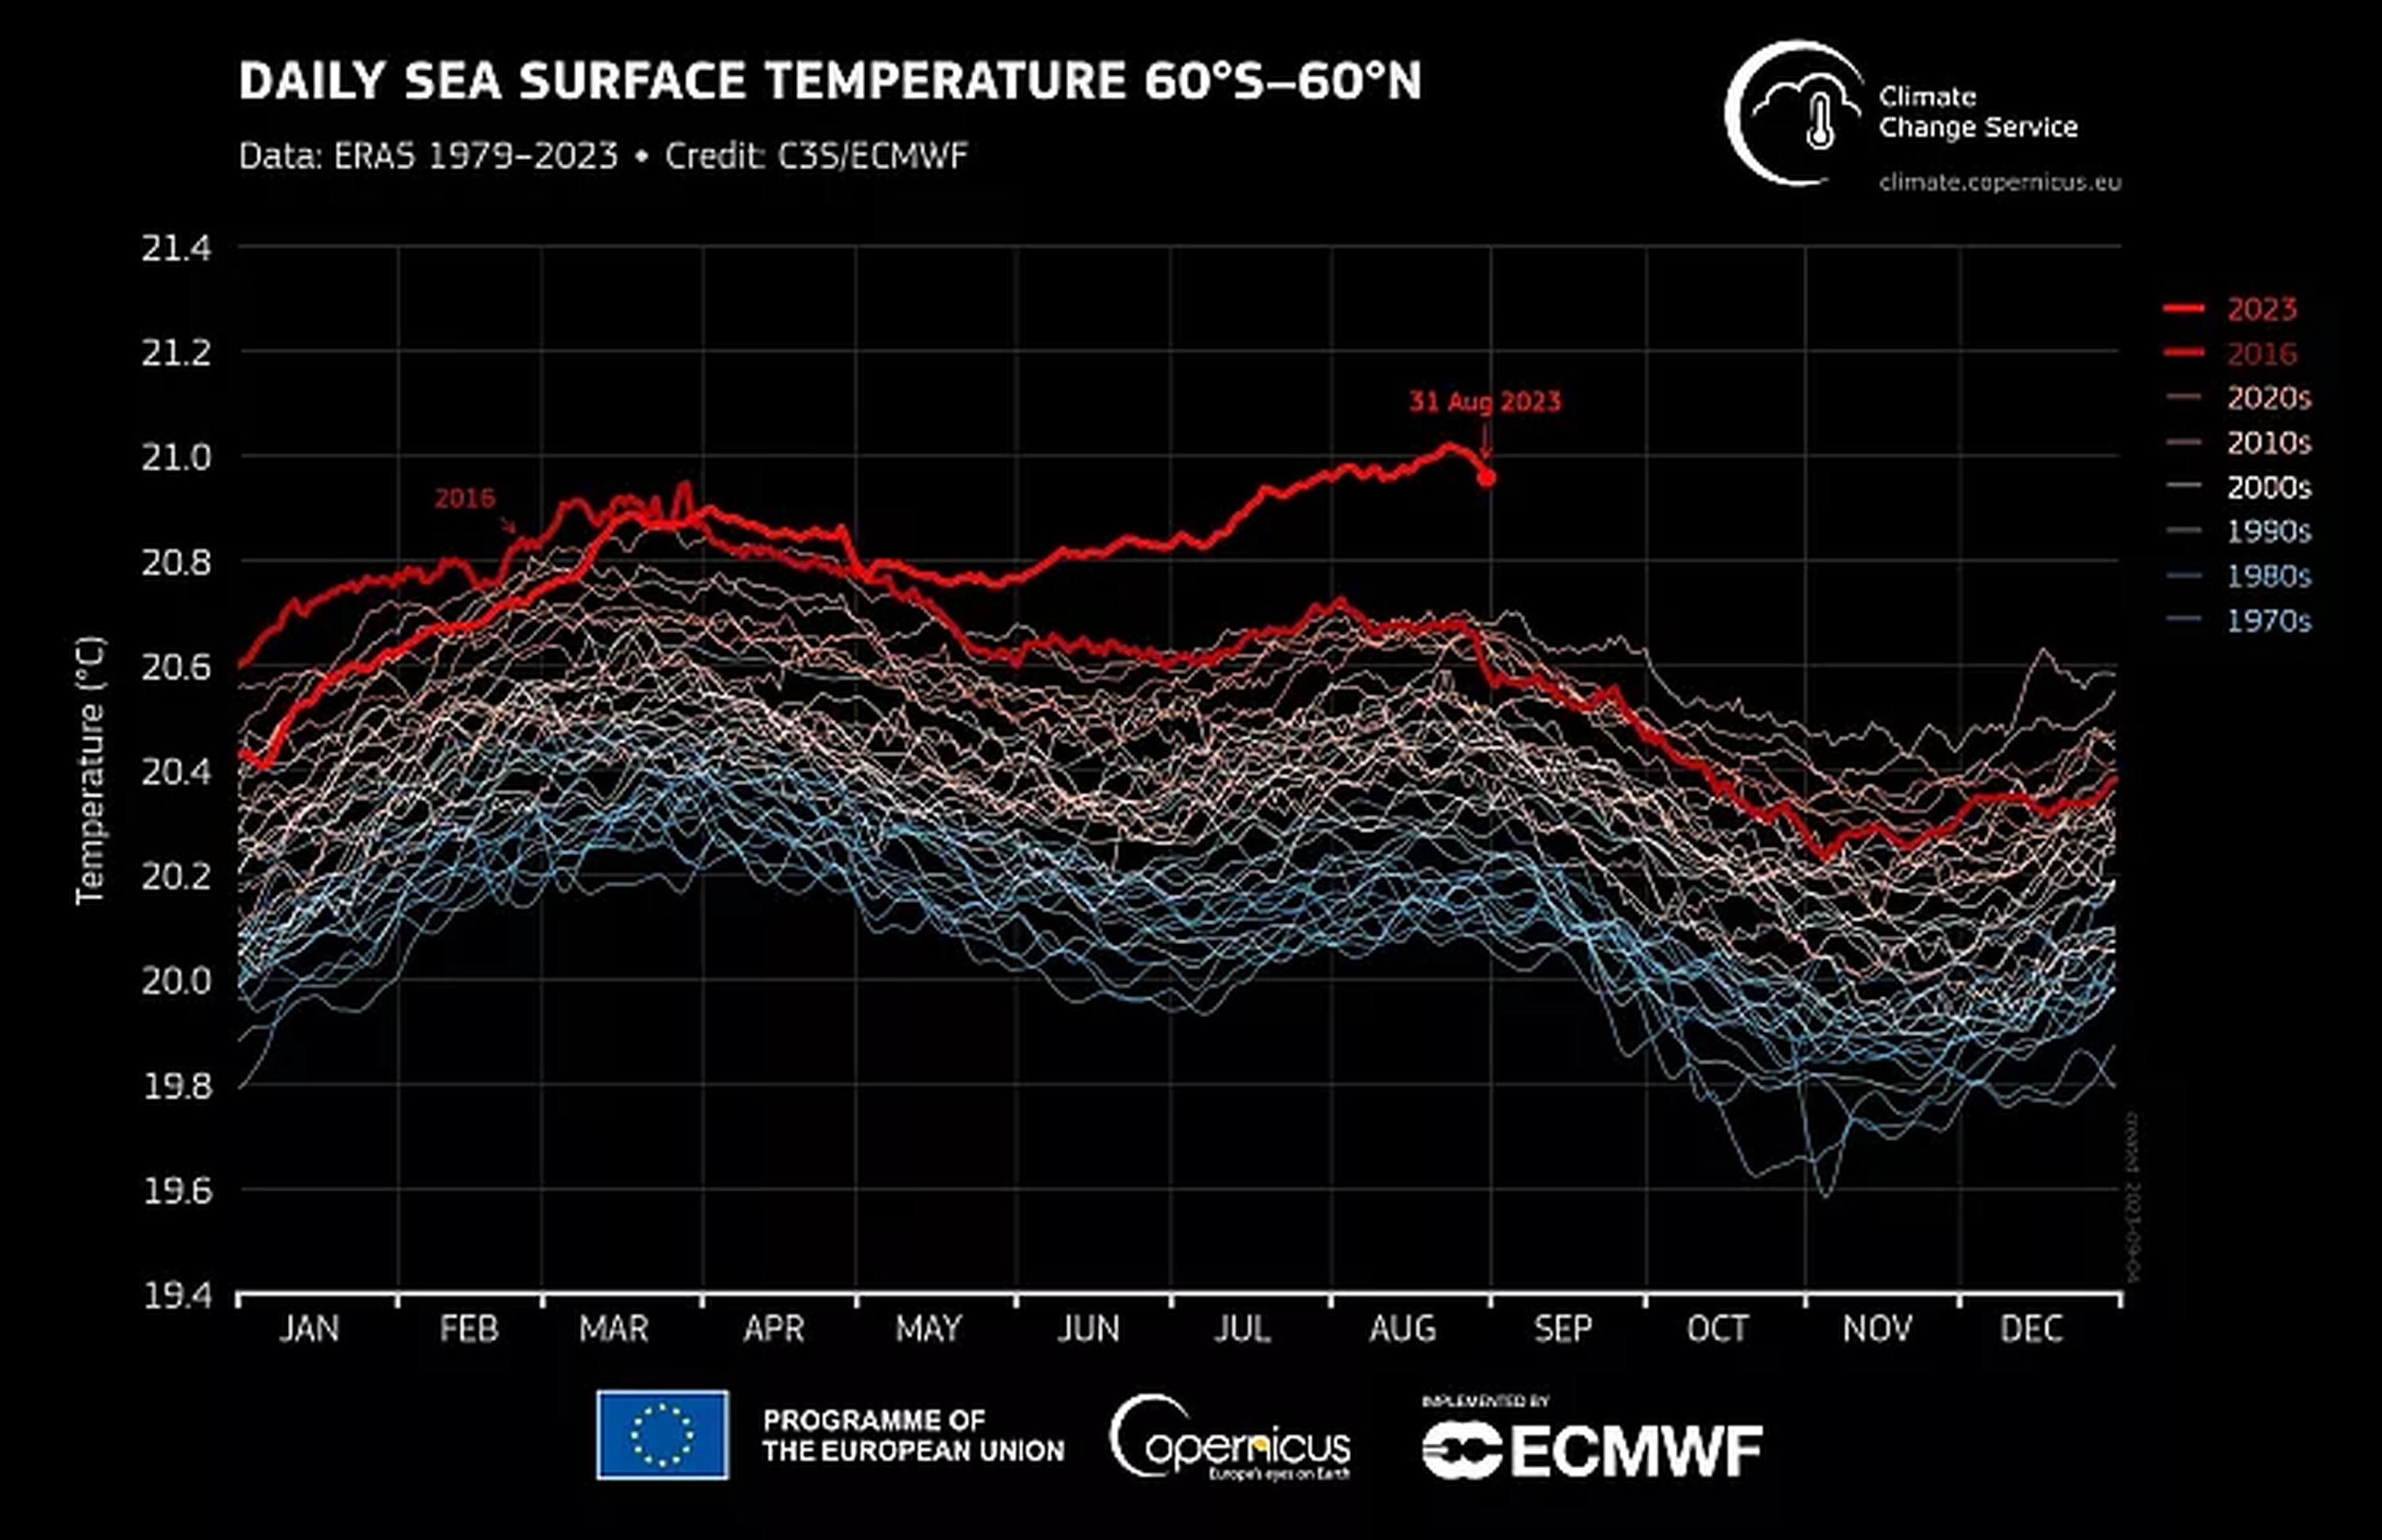 Temperatura global diaria de la superficie del mar representada como una serie temporal para cada año desde el 1 de enero de 1979 hasta el 31 de agosto de 2023.